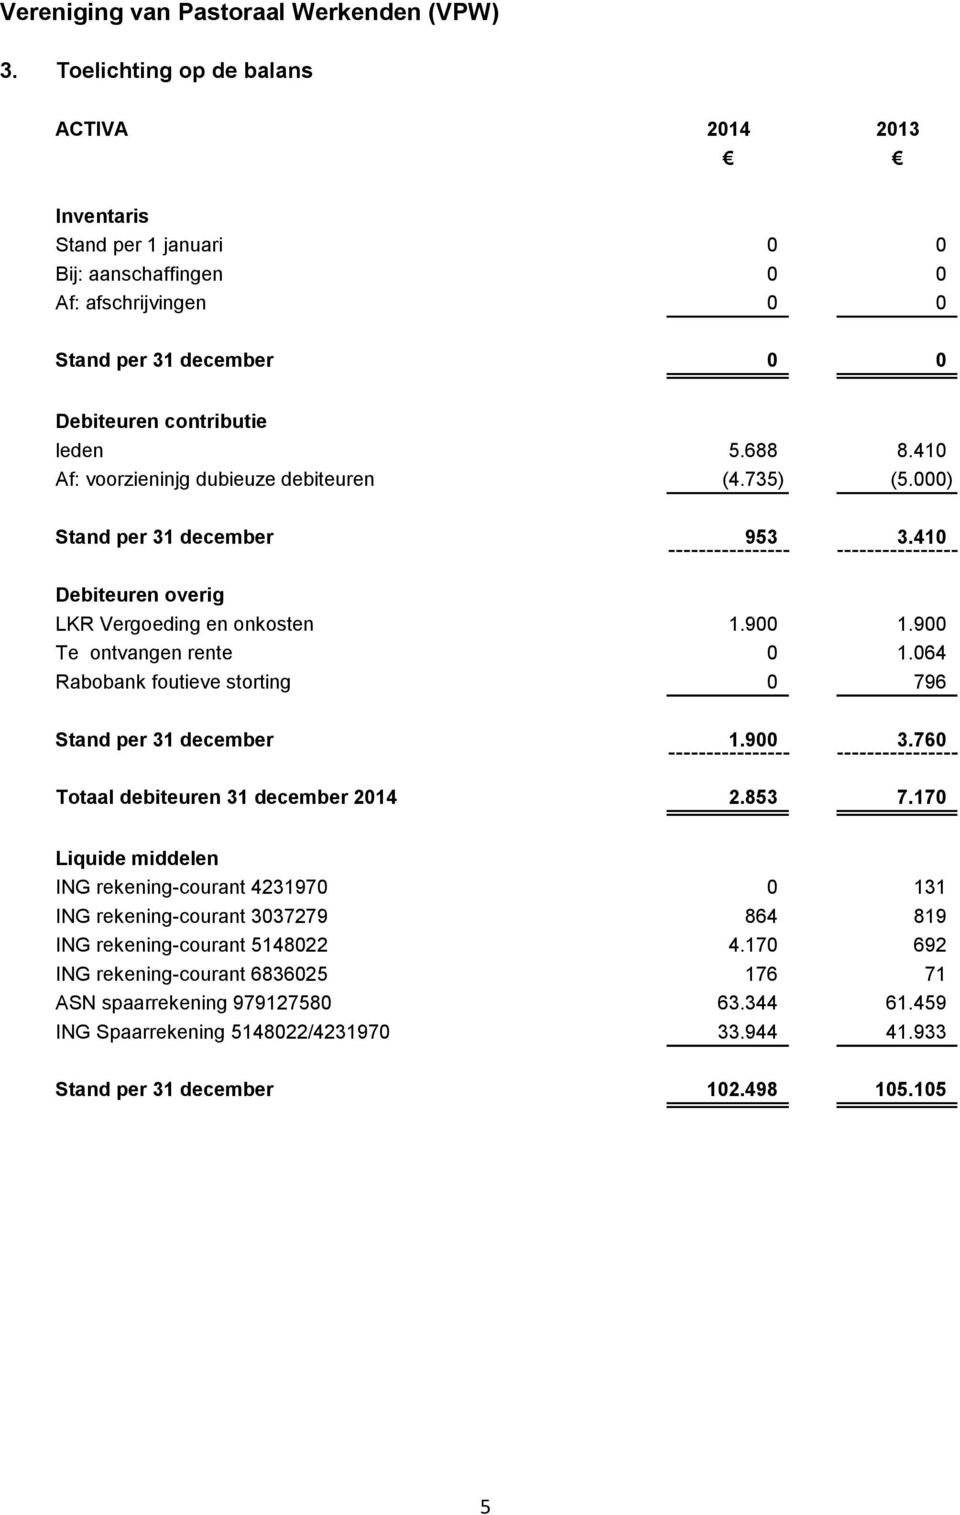 064 Rabobank foutieve storting 0 796 Stand per 31 december 1.900 3.760 Totaal debiteuren 31 december 2014 2.853 7.